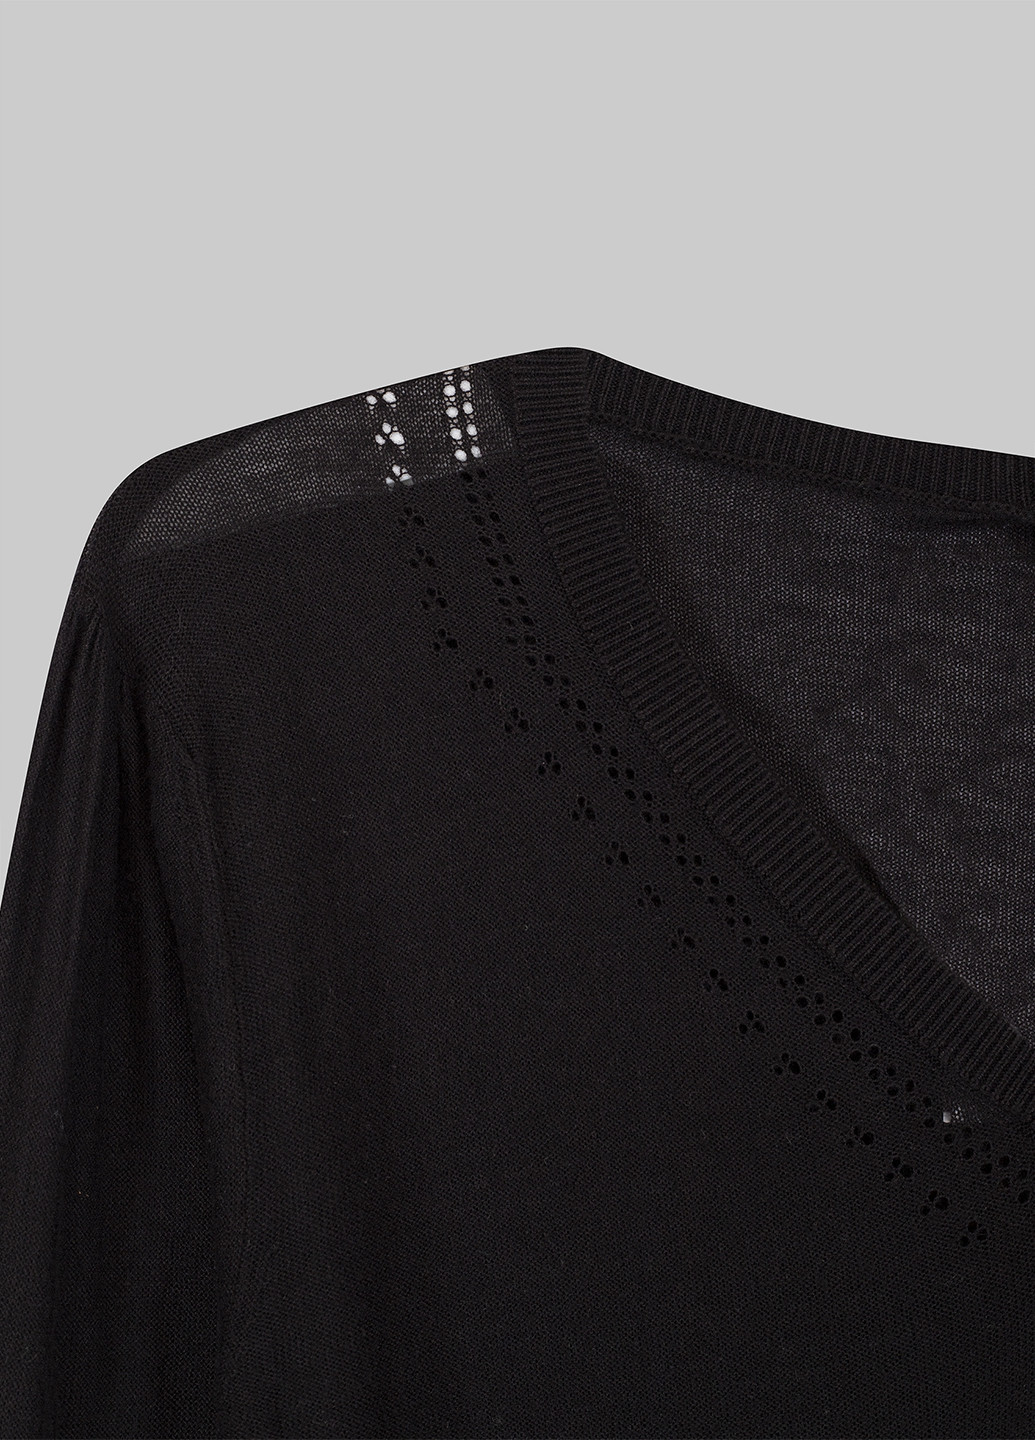 Черный демисезонный пуловер пуловер Madonna